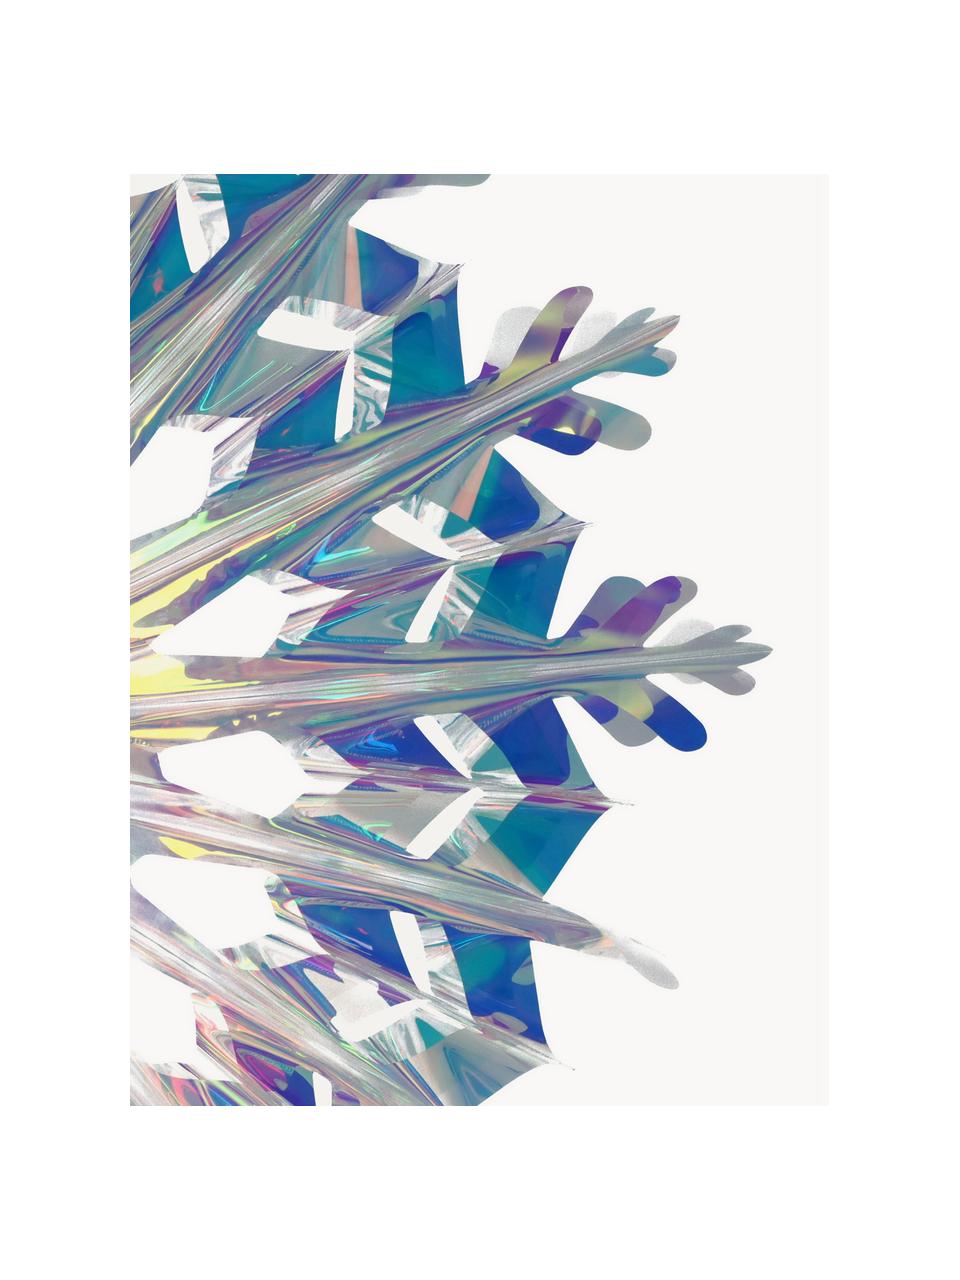 Baumanhänger Iridescent in Schneeflockenform, Kunststoff, Transparent, irisierend, B 45 x H 45 cm